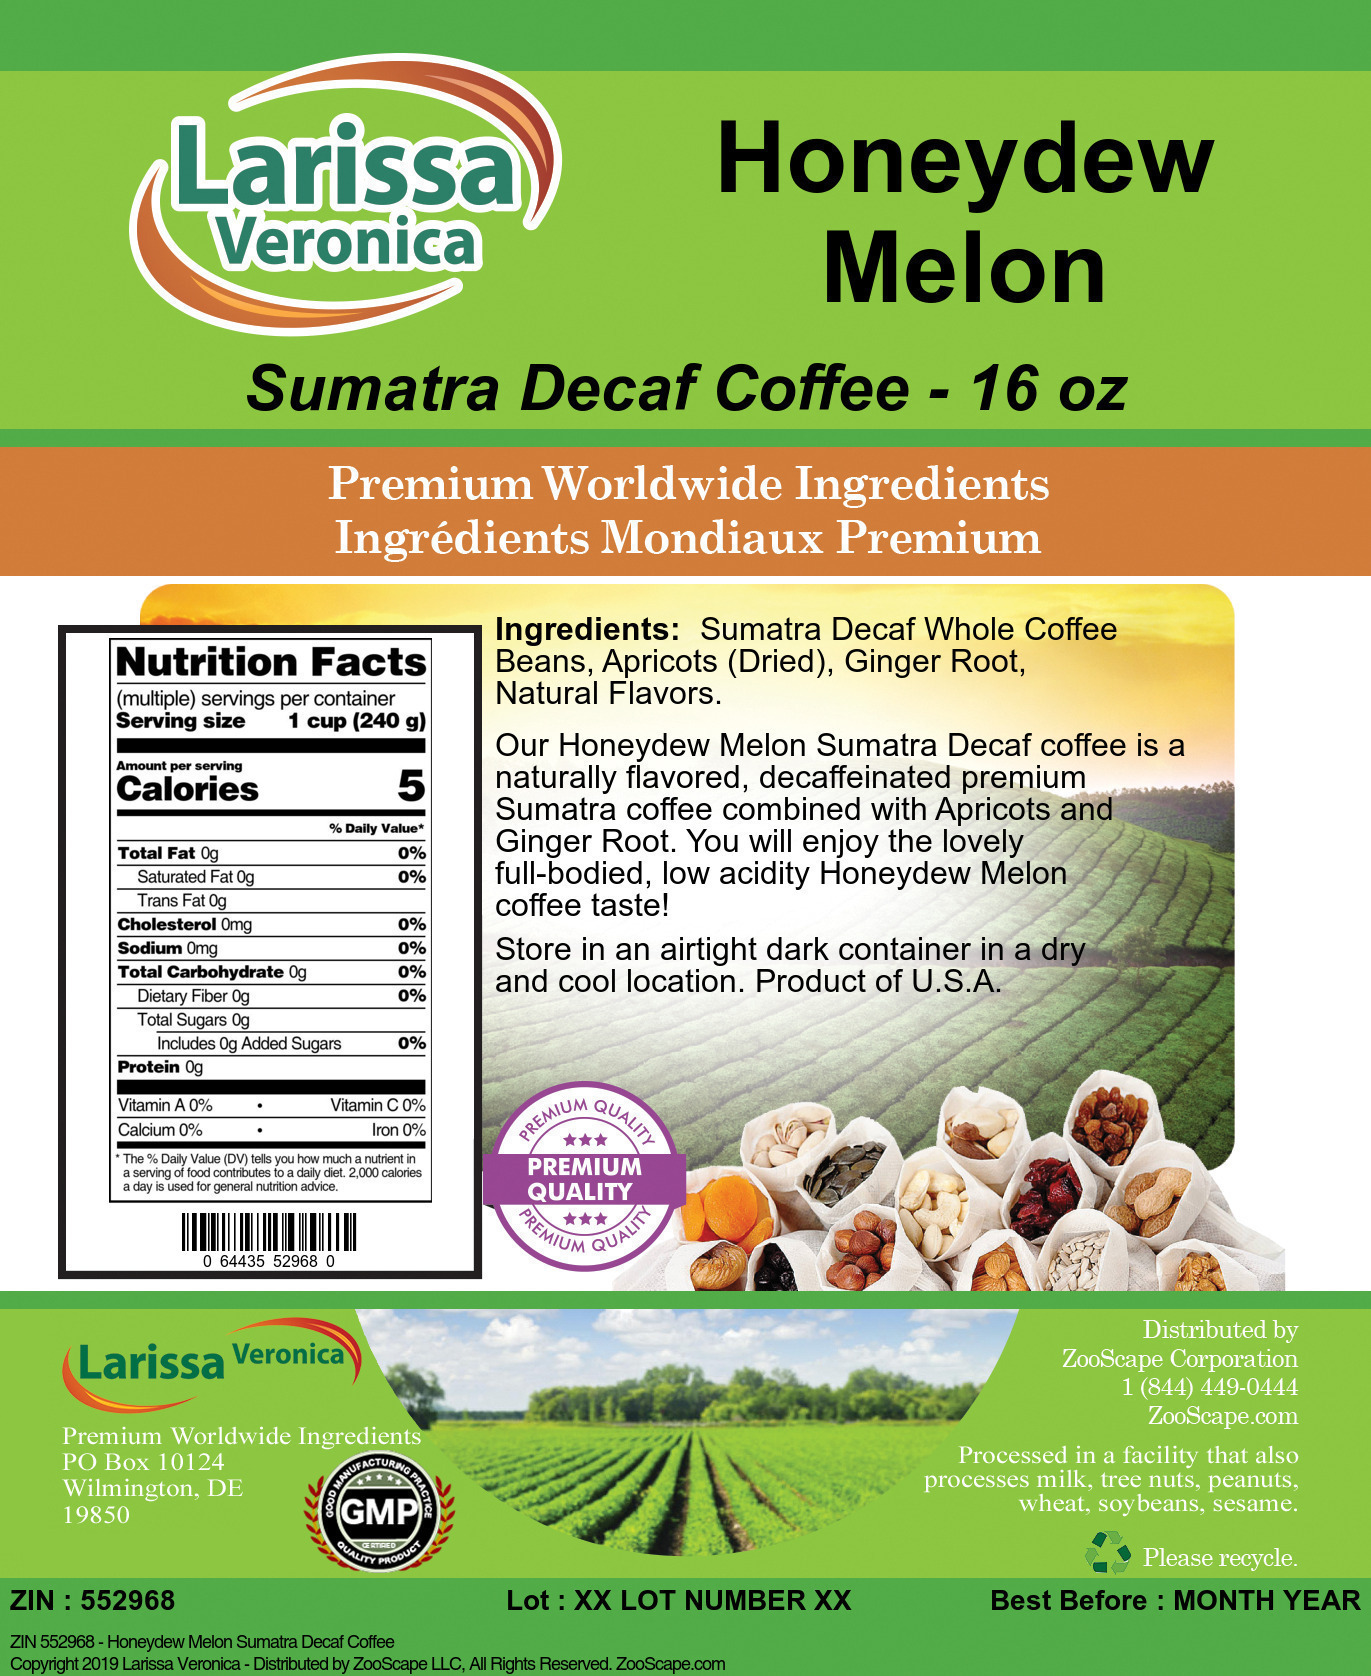 Honeydew Melon Sumatra Decaf Coffee - Label